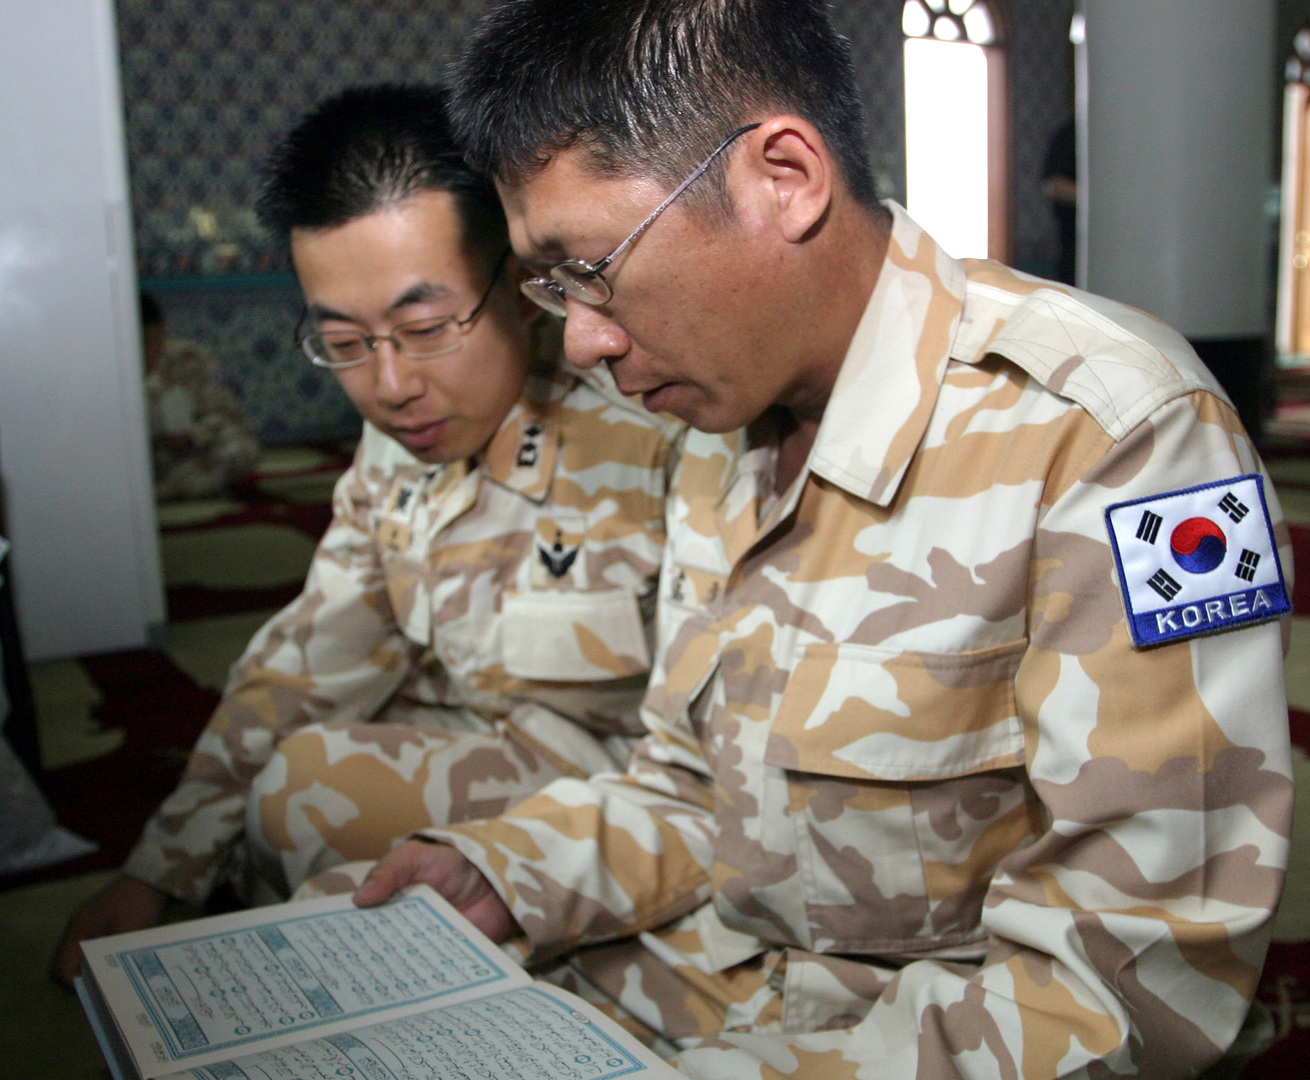 الجيش الكوري الجنوبي يقرر توفير الطعام لجنوده حسب خياراتهم الدينية والعقائدية